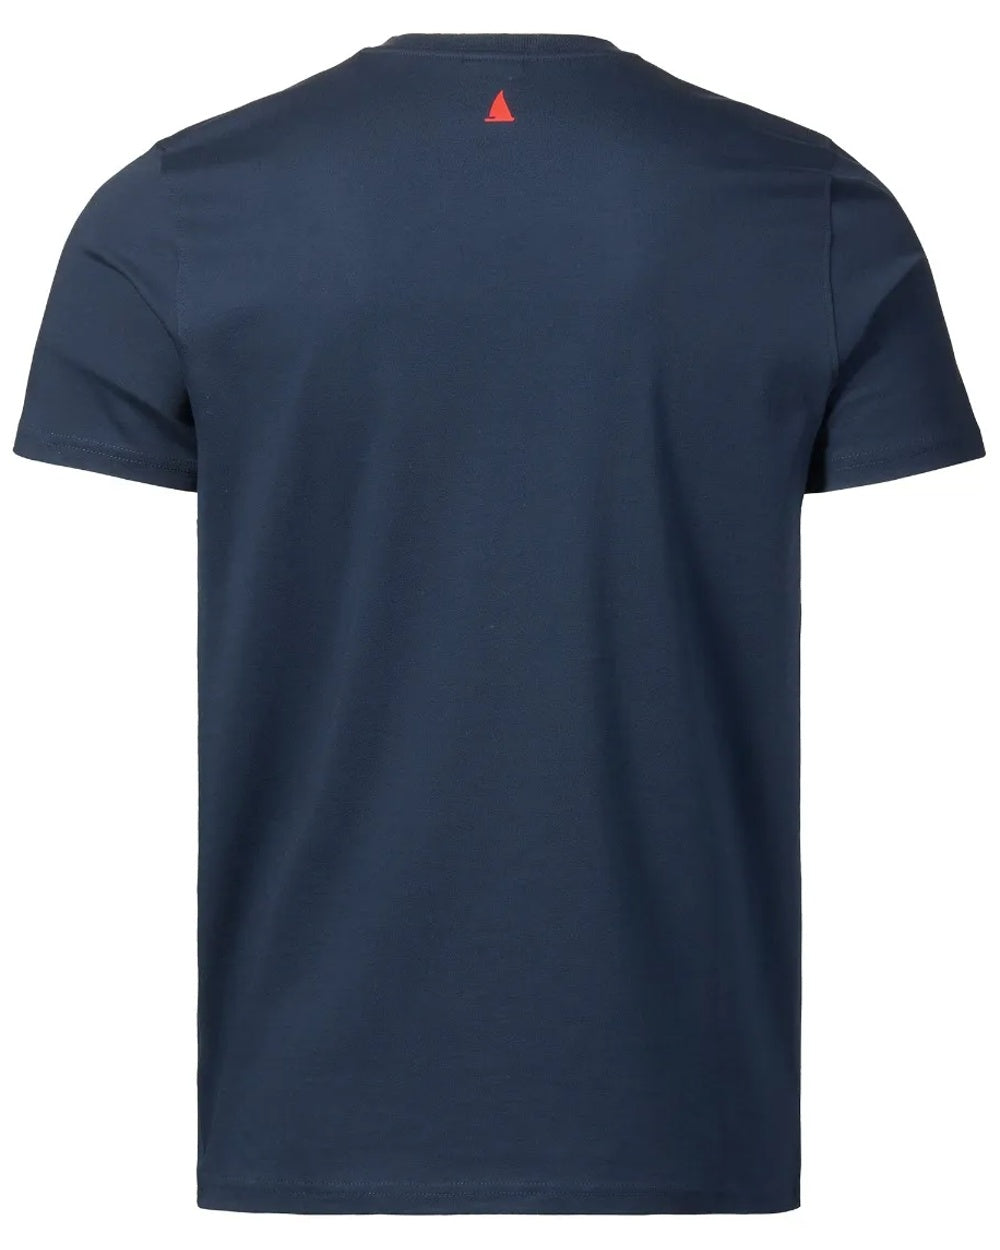 Musto Mens Marina Short Sleeve T-Shirt in Navy 